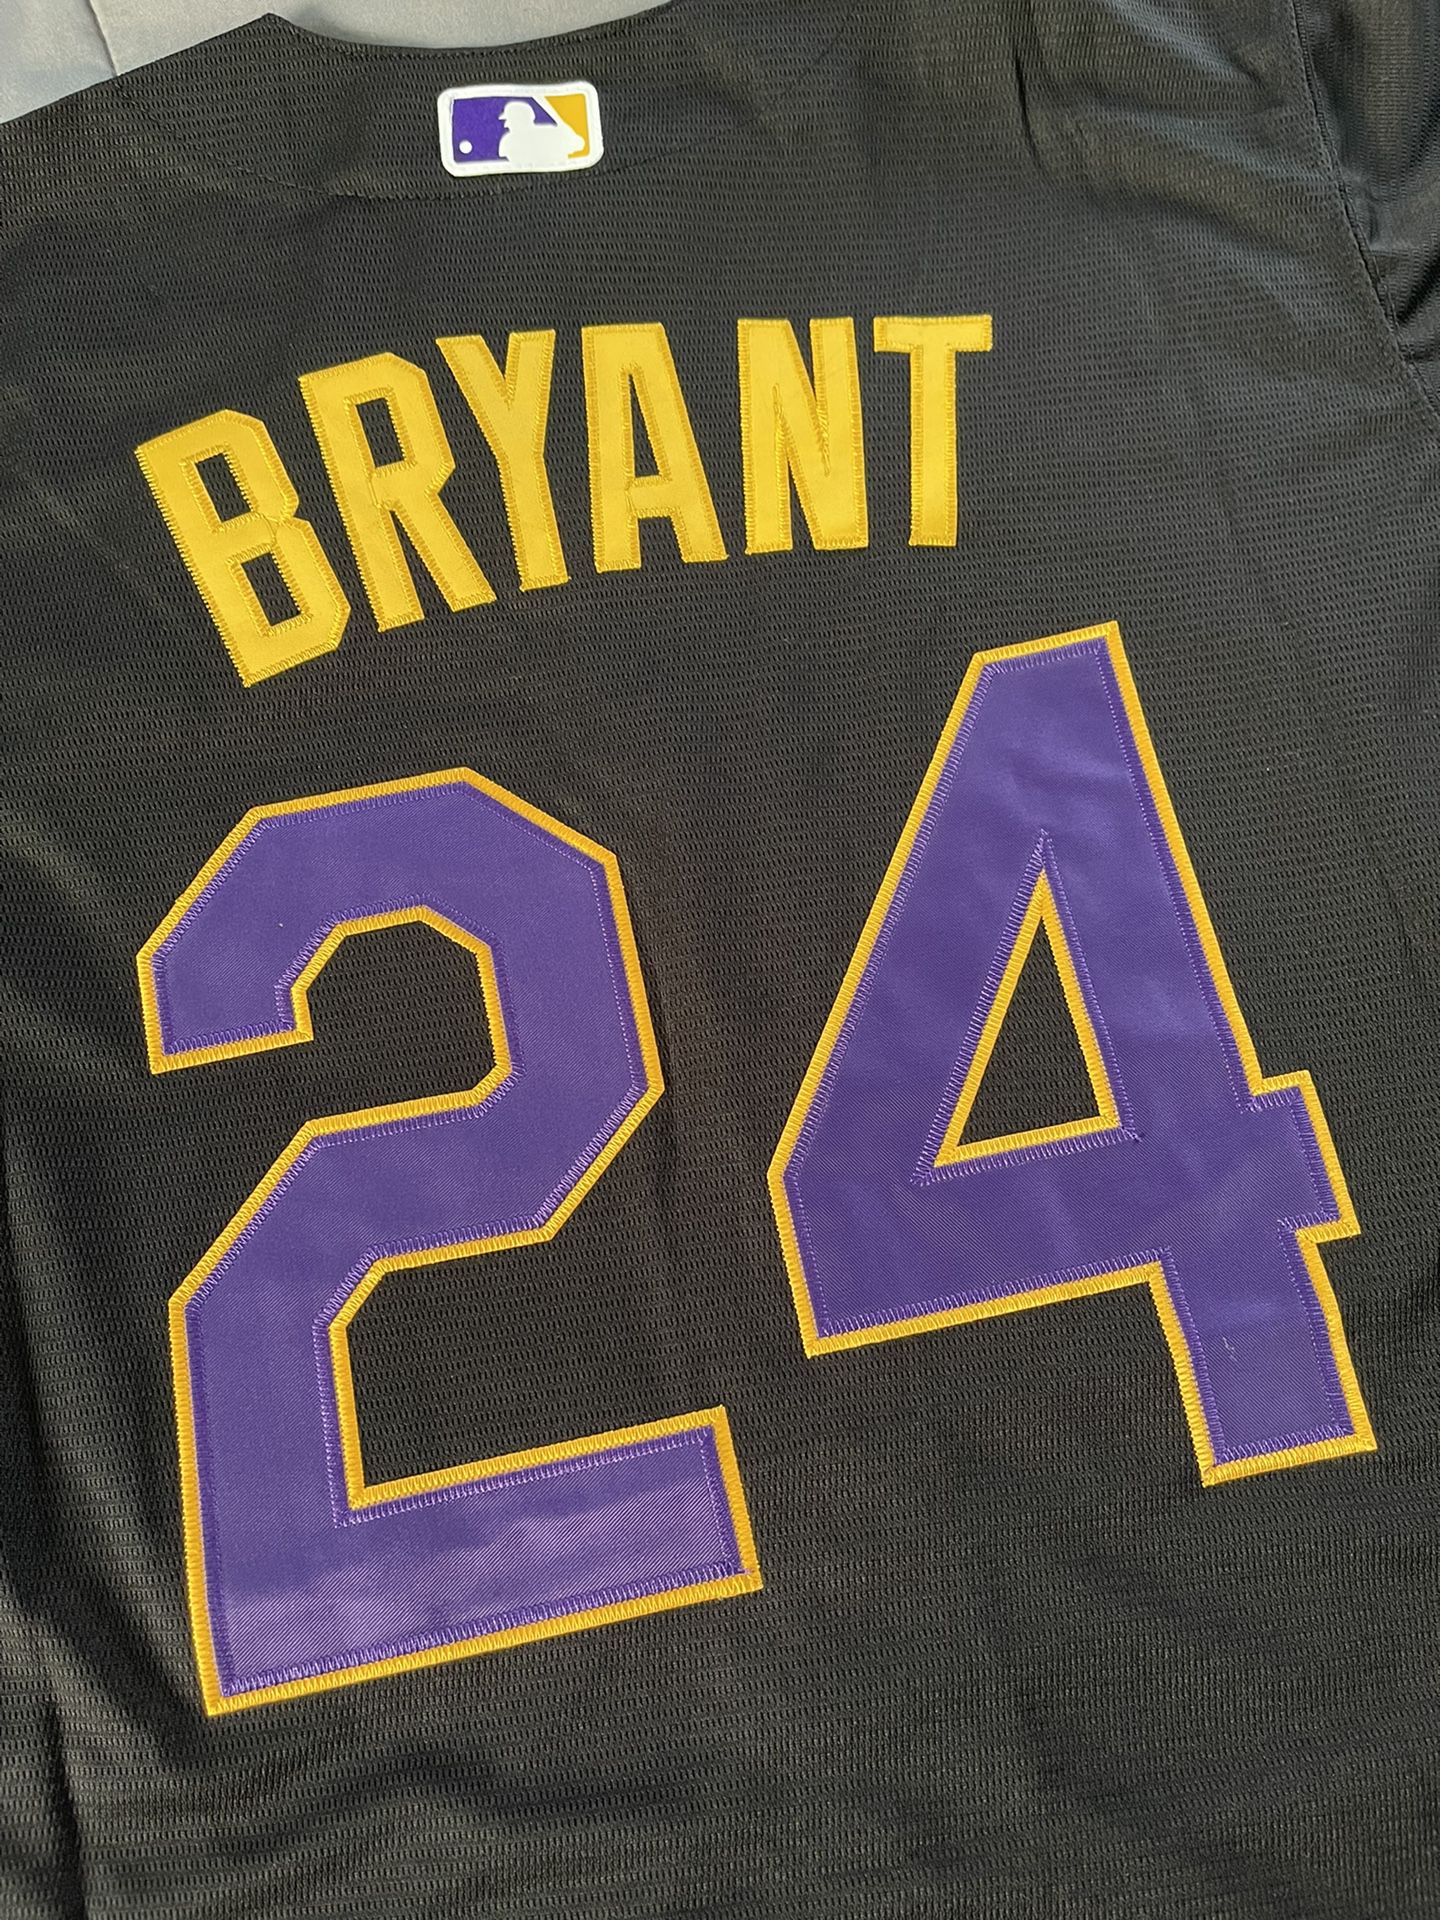 Kobe Bryant 8/24 Black LA Dodgers Jersey – South Bay Jerseys